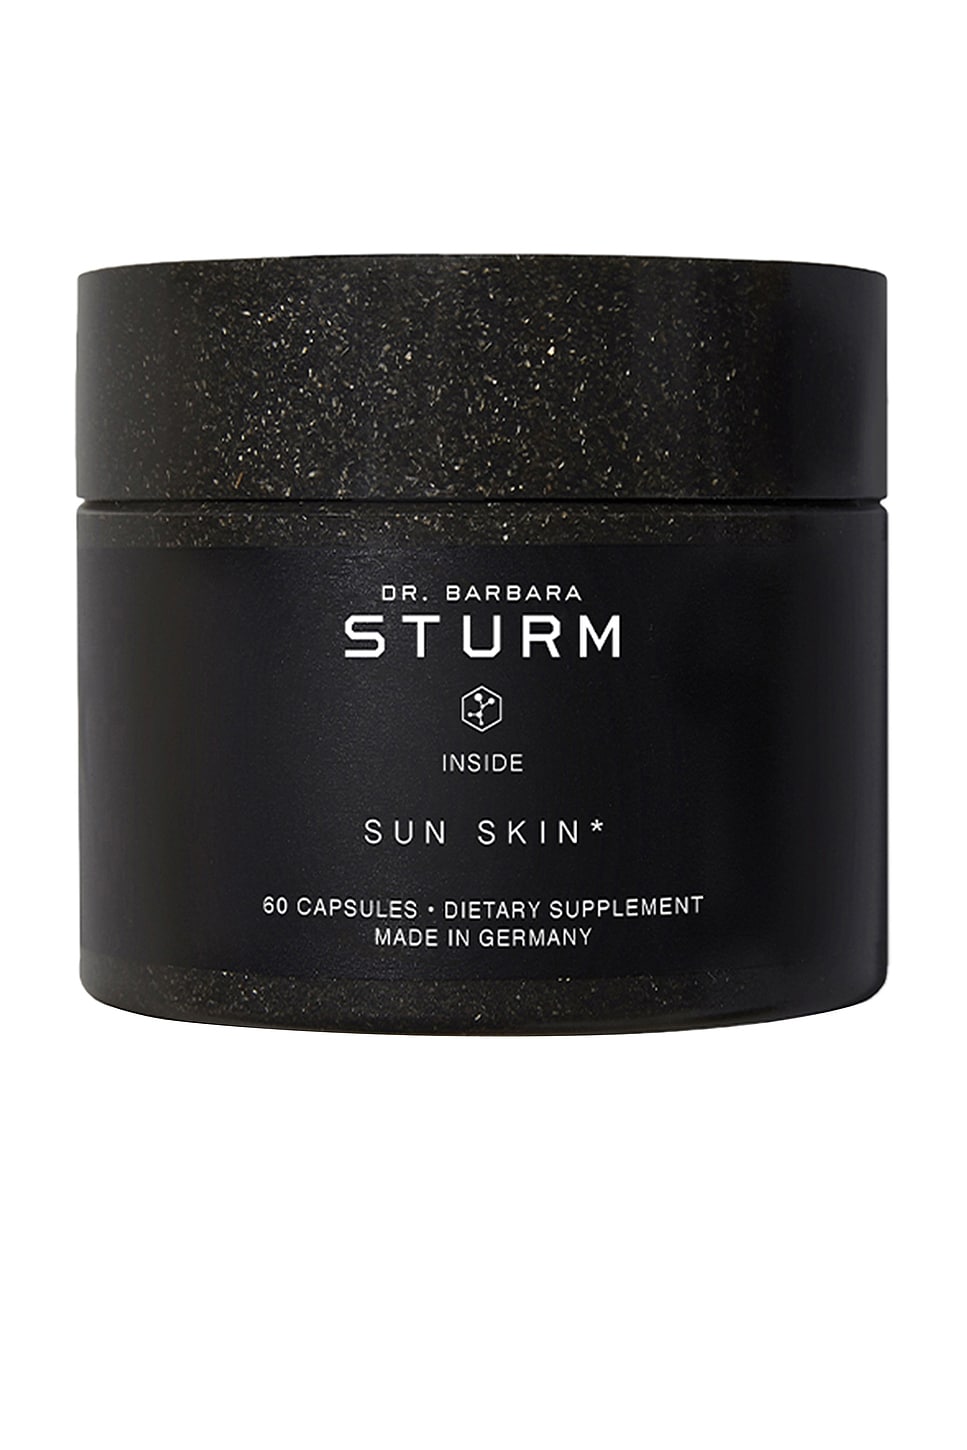 Sun Skin Supplement in Beauty: NA